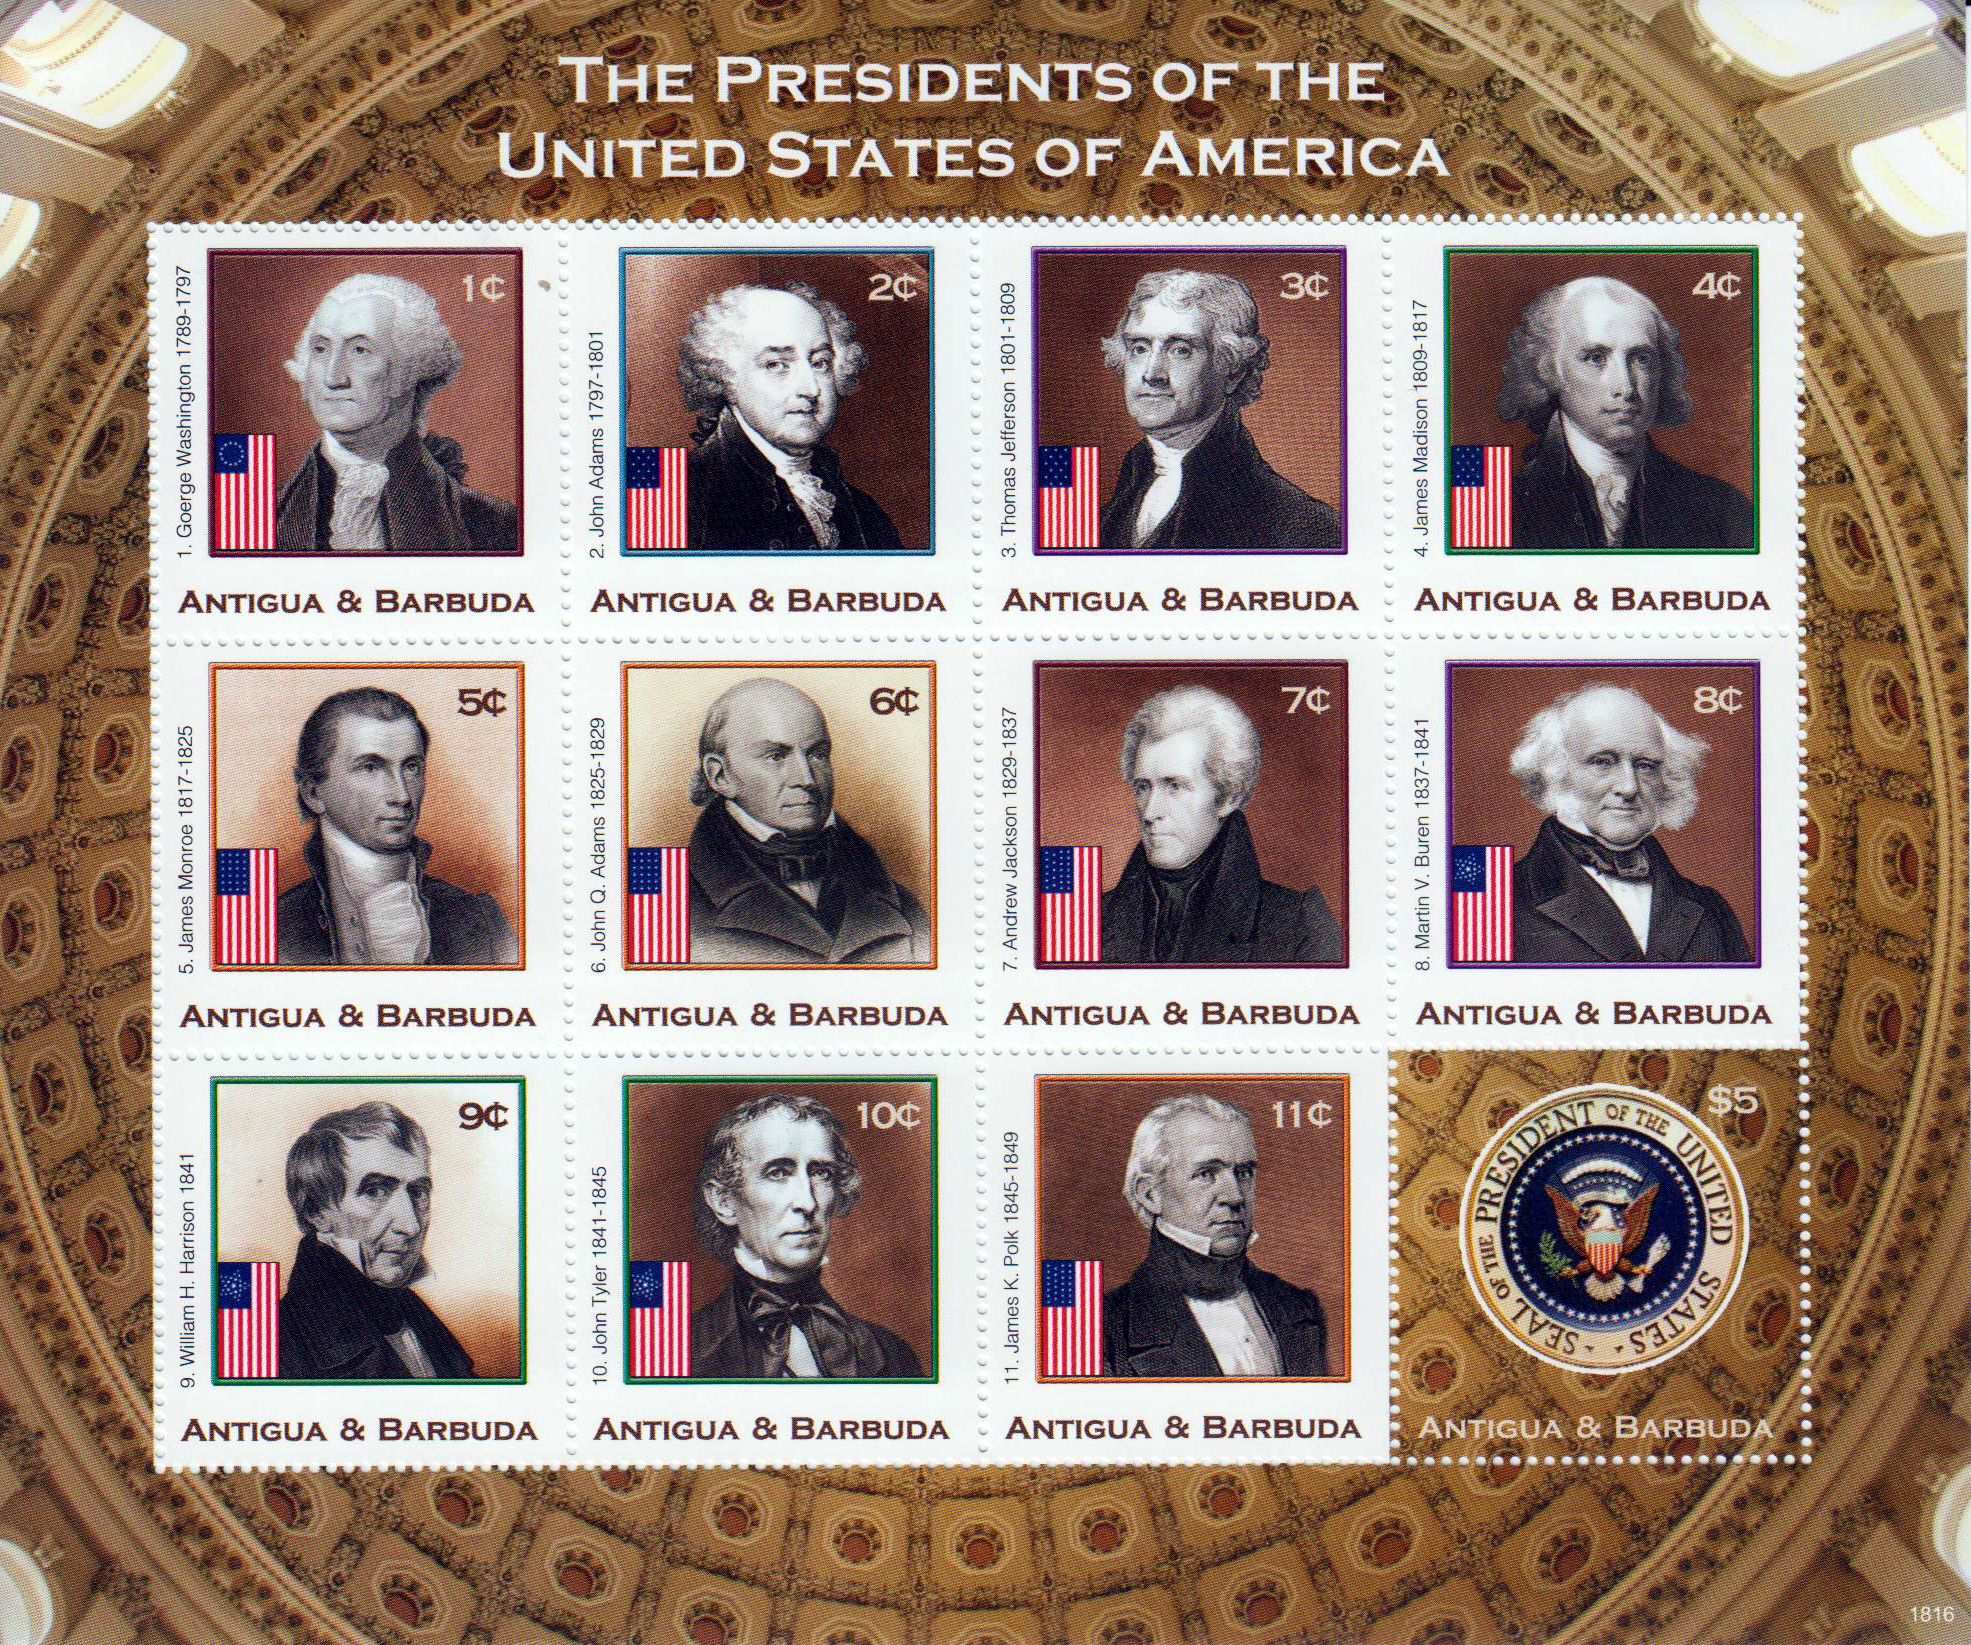 U.S.Präsidenten, Washington - Polk